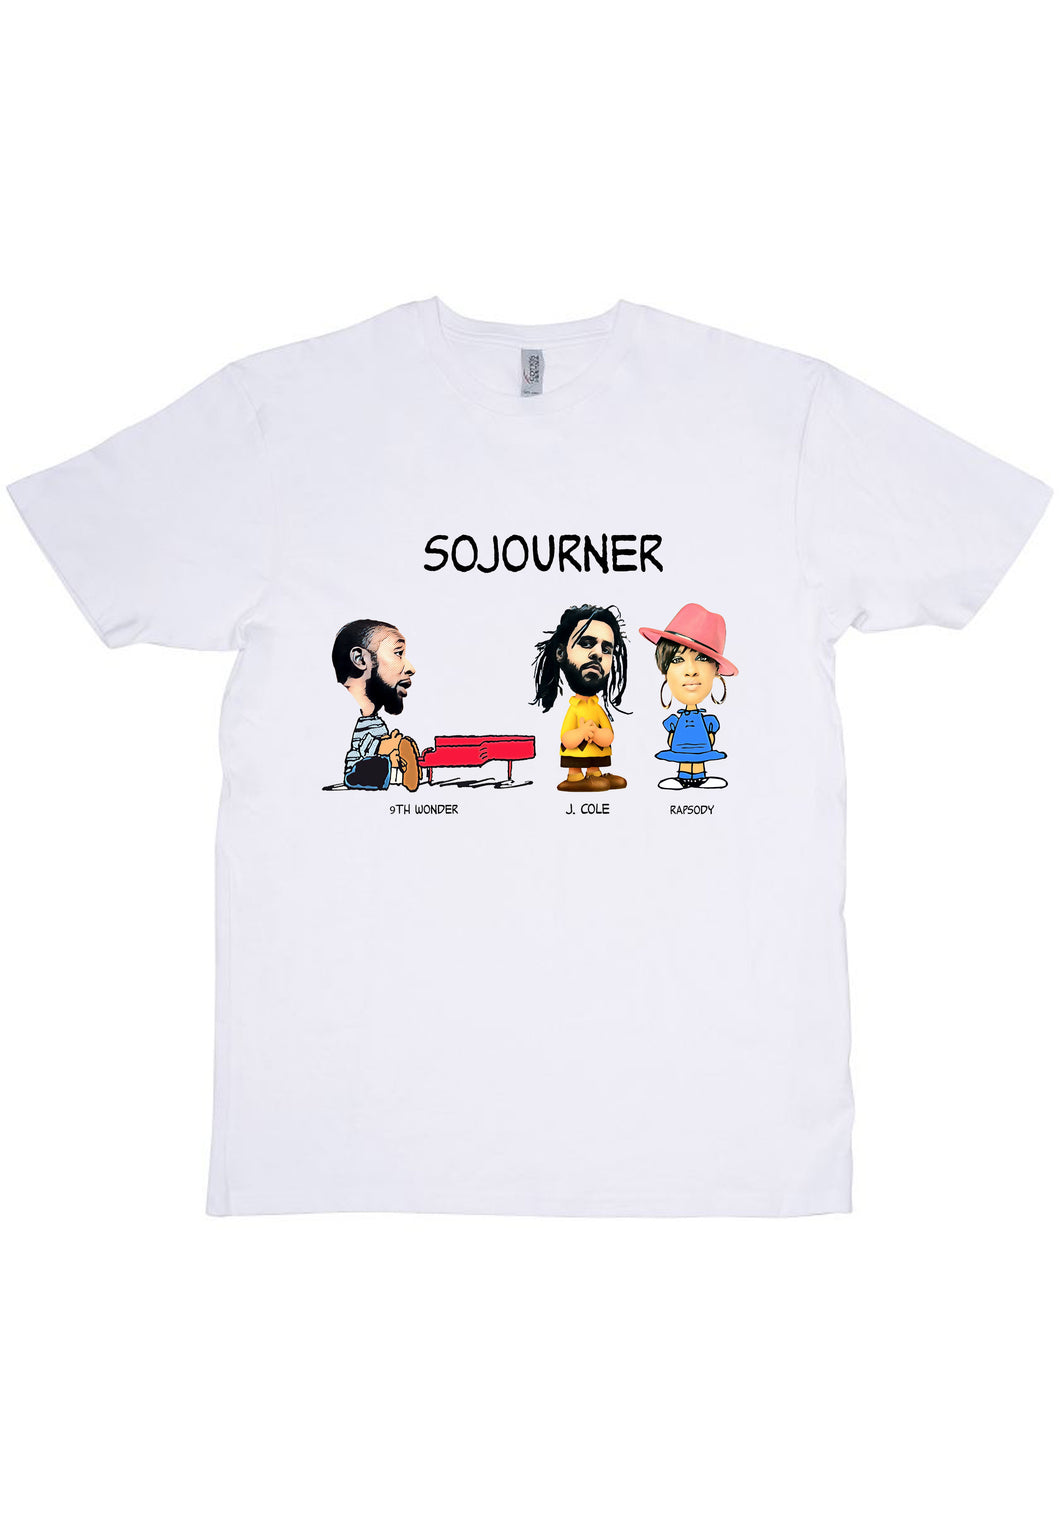 Sojourner T-Shirt